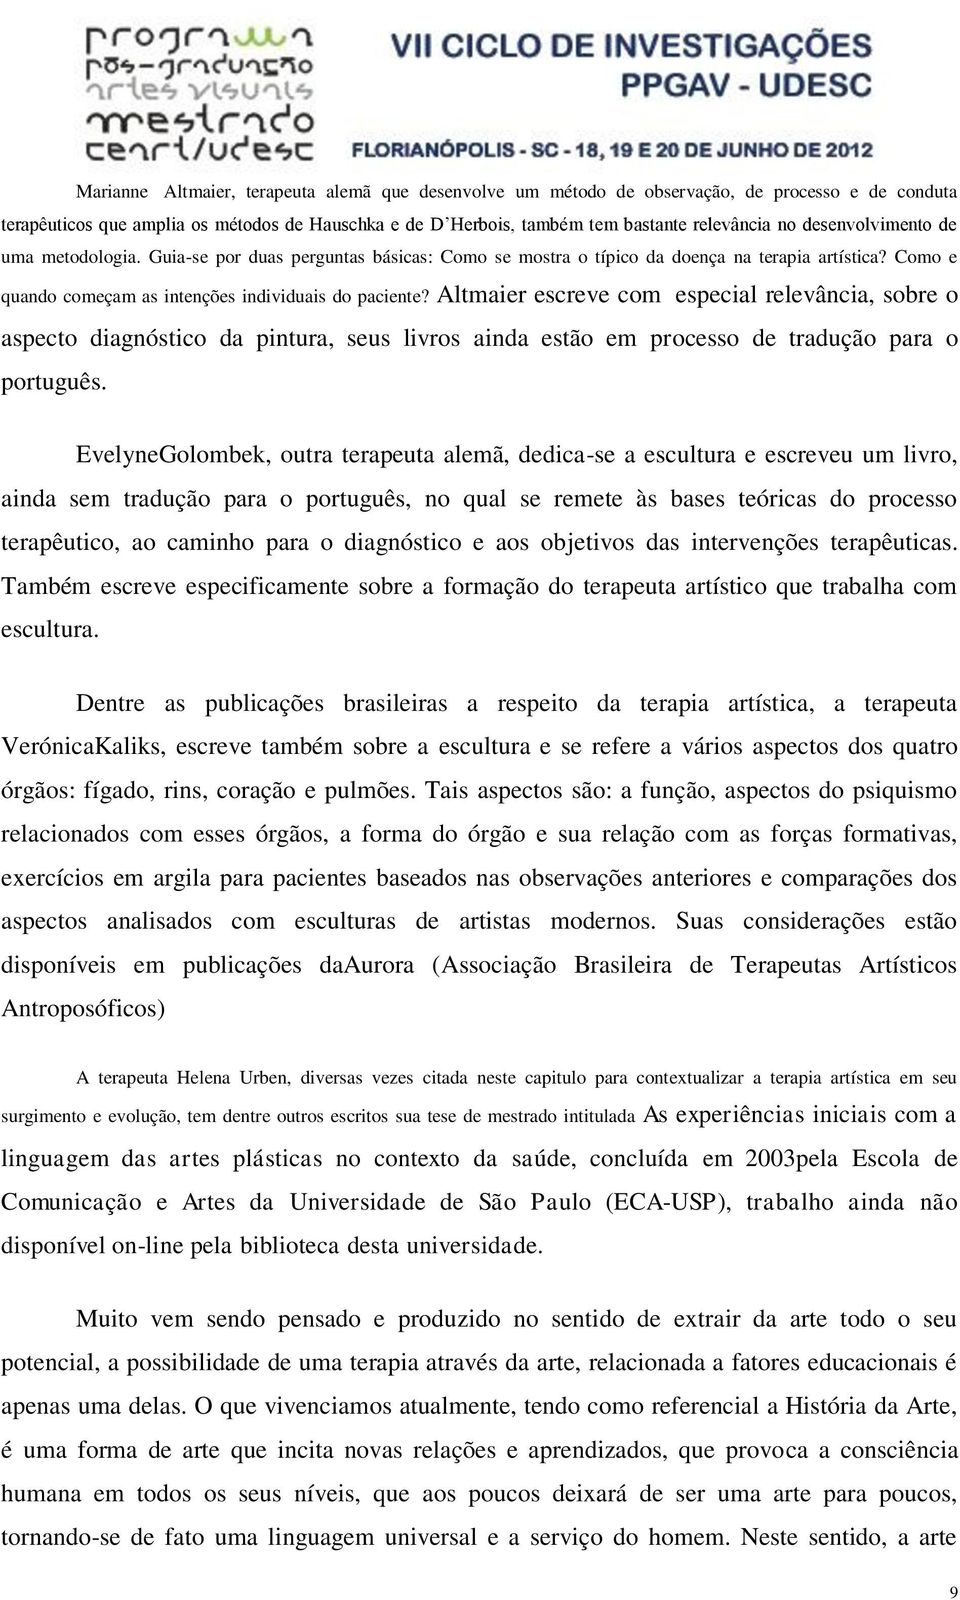 Altmaier escreve com especial relevância, sobre o aspecto diagnóstico da pintura, seus livros ainda estão em processo de tradução para o português.